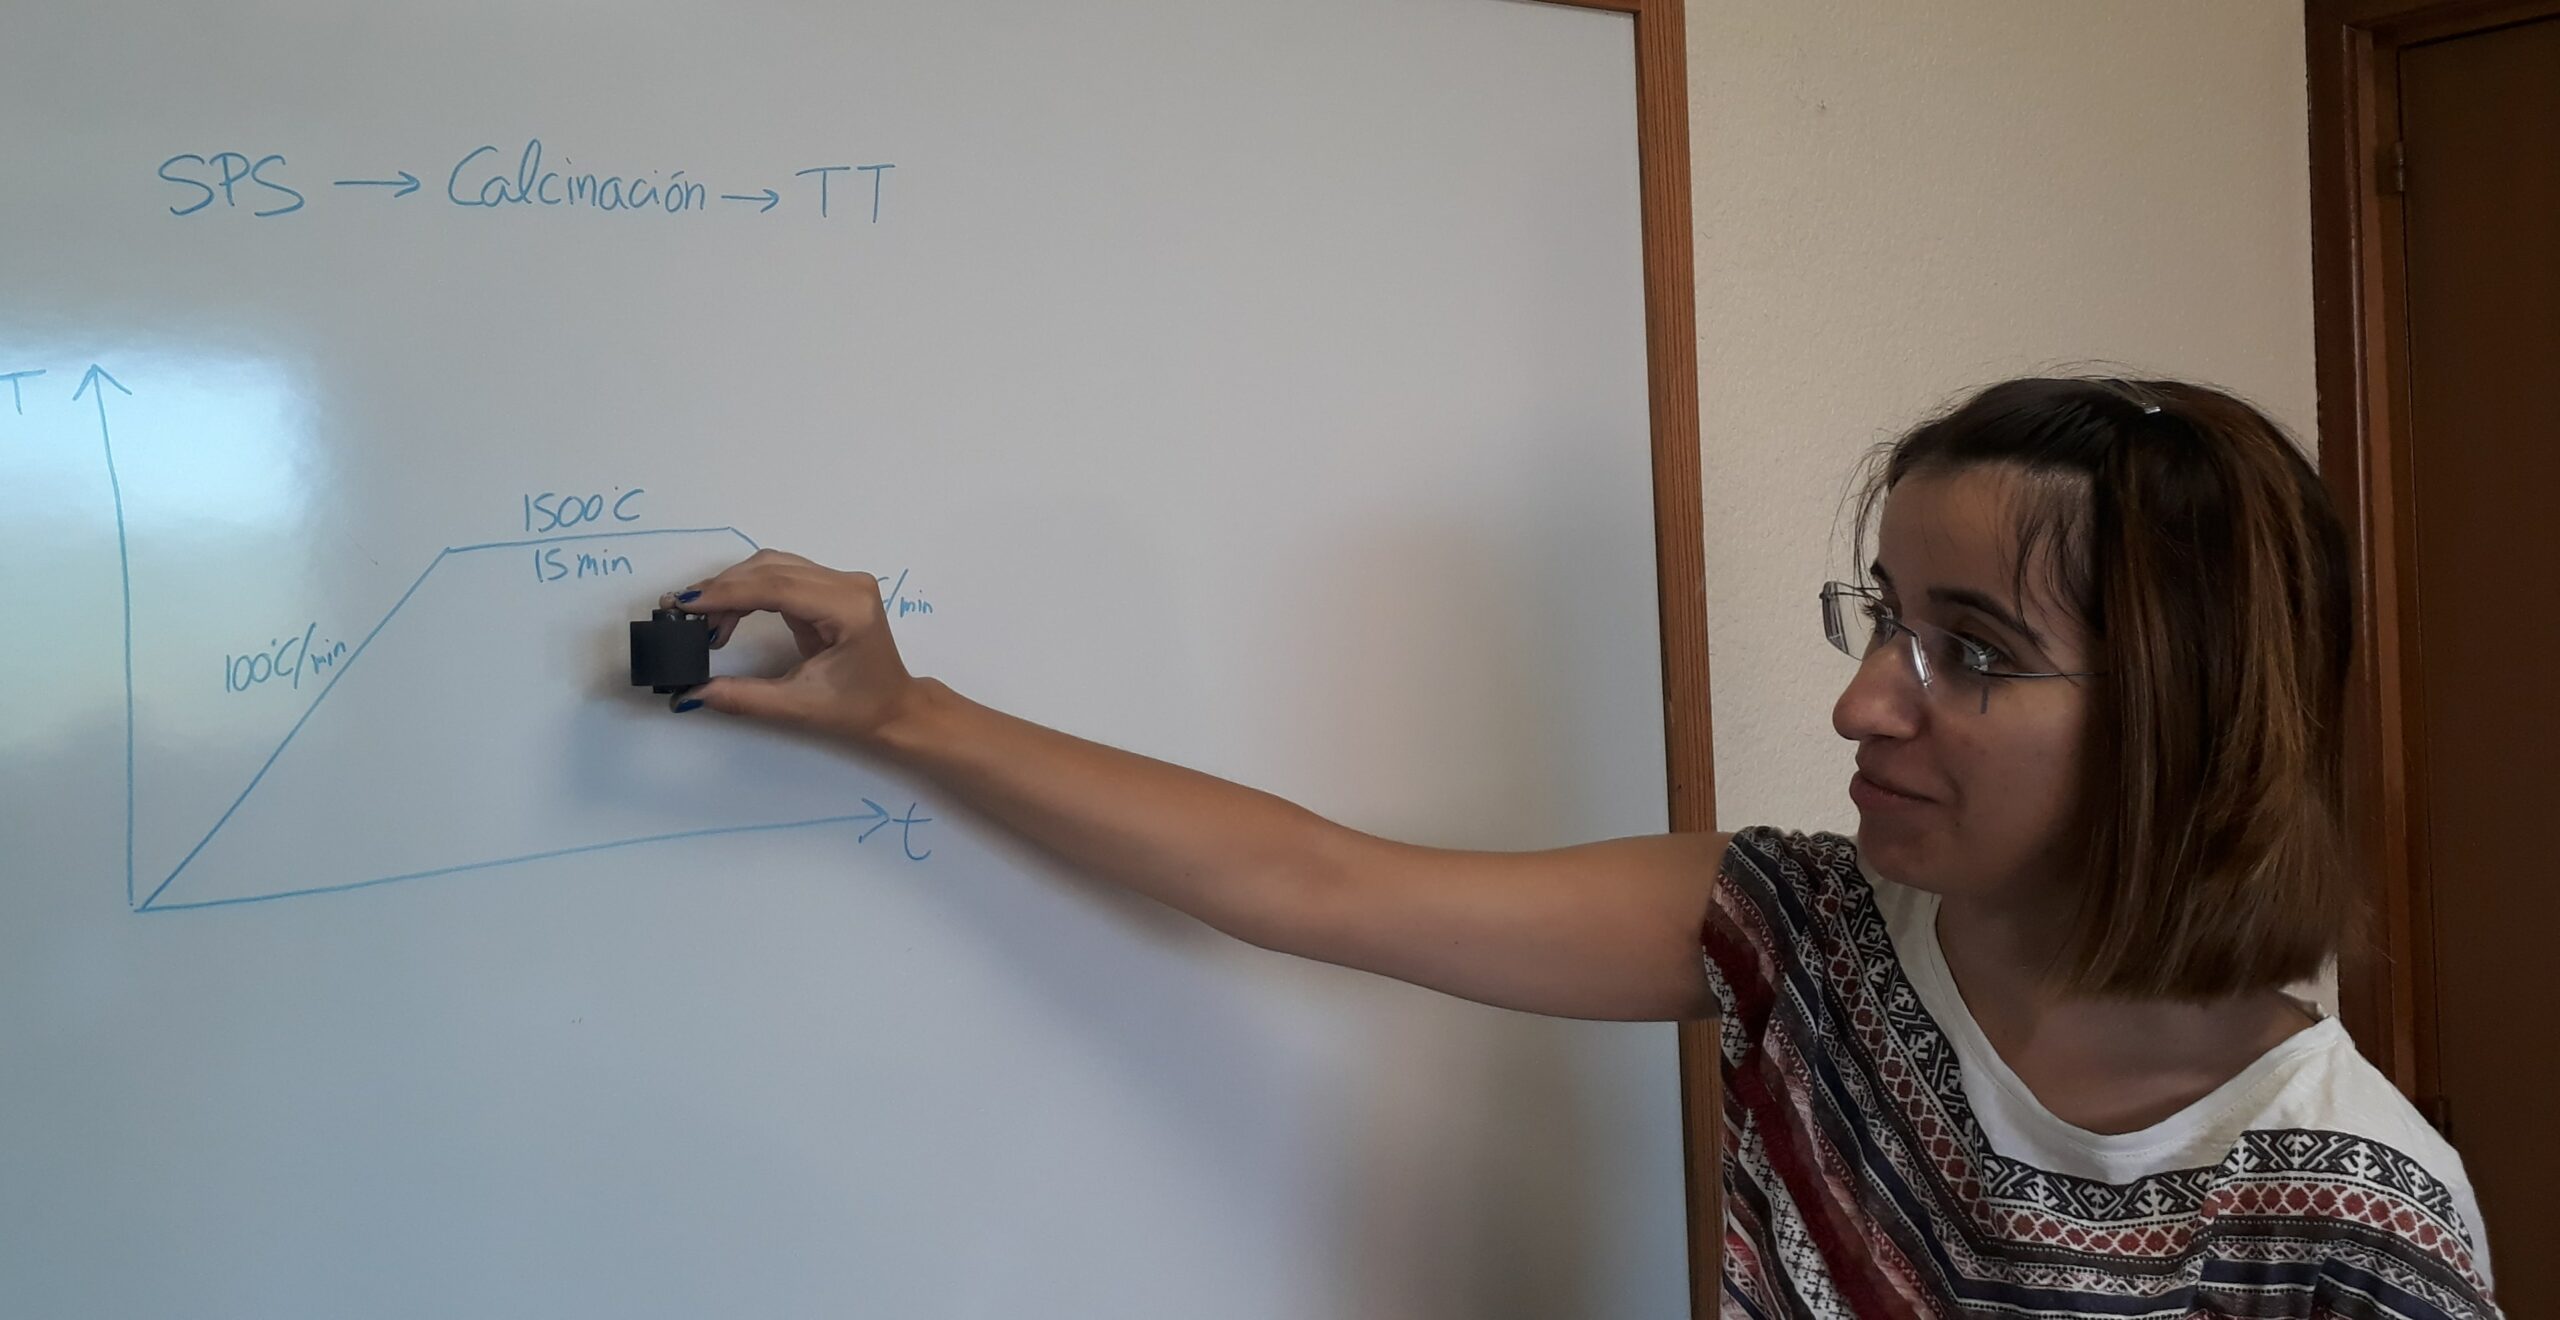 La investigadora Manuela González muestra el molde para la preparación de la muestra junto a las condiciones de trabajo en la pizarra